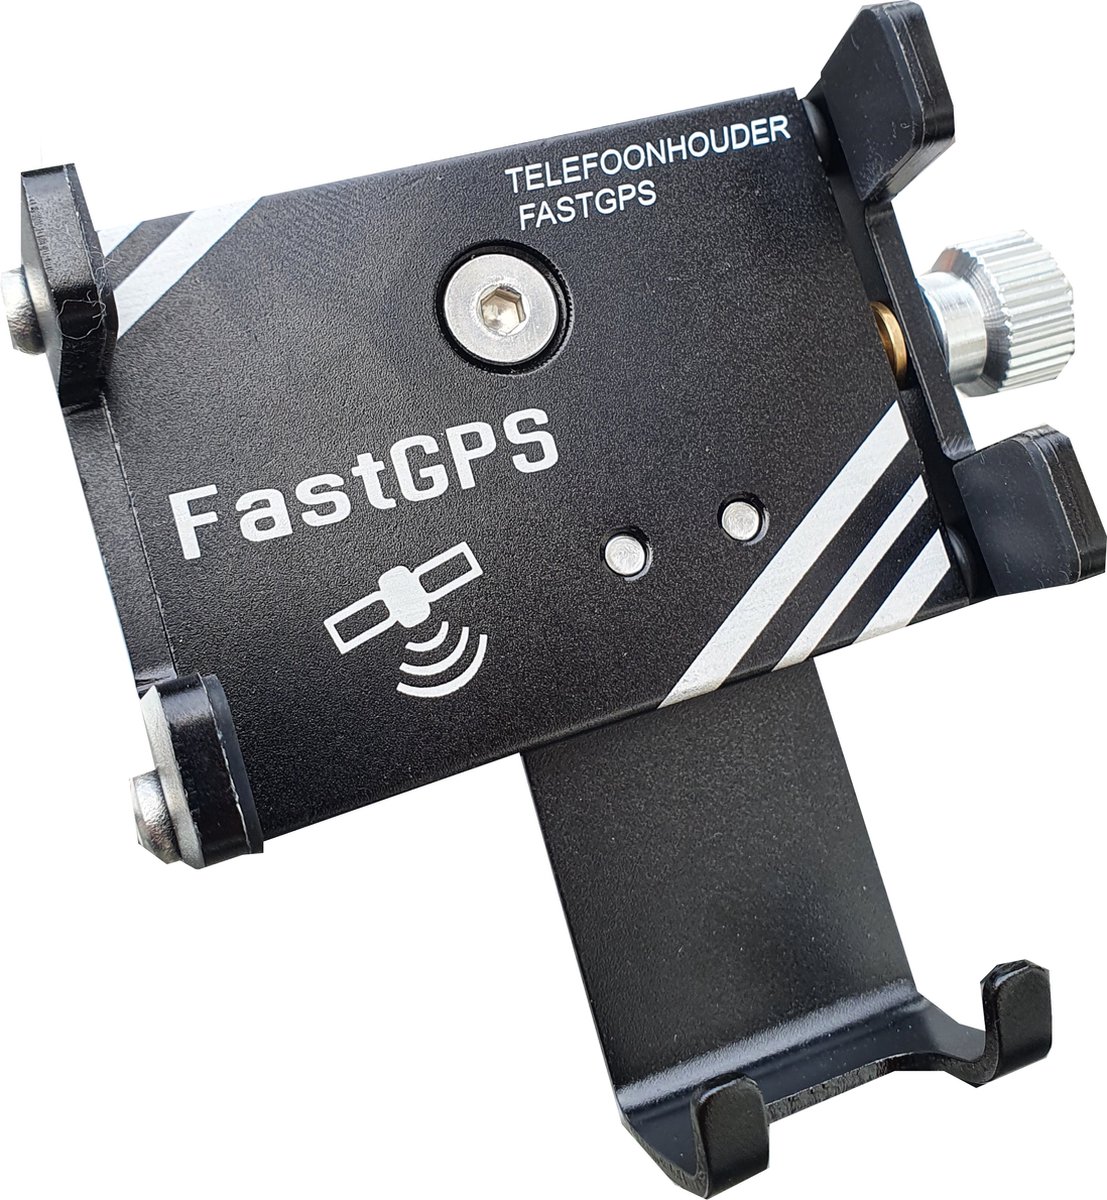 Fastgps - Telefoonhouder - Fiets/Scooter/Motor - Roestvrij Aluminium - Simpel zelf Monteren